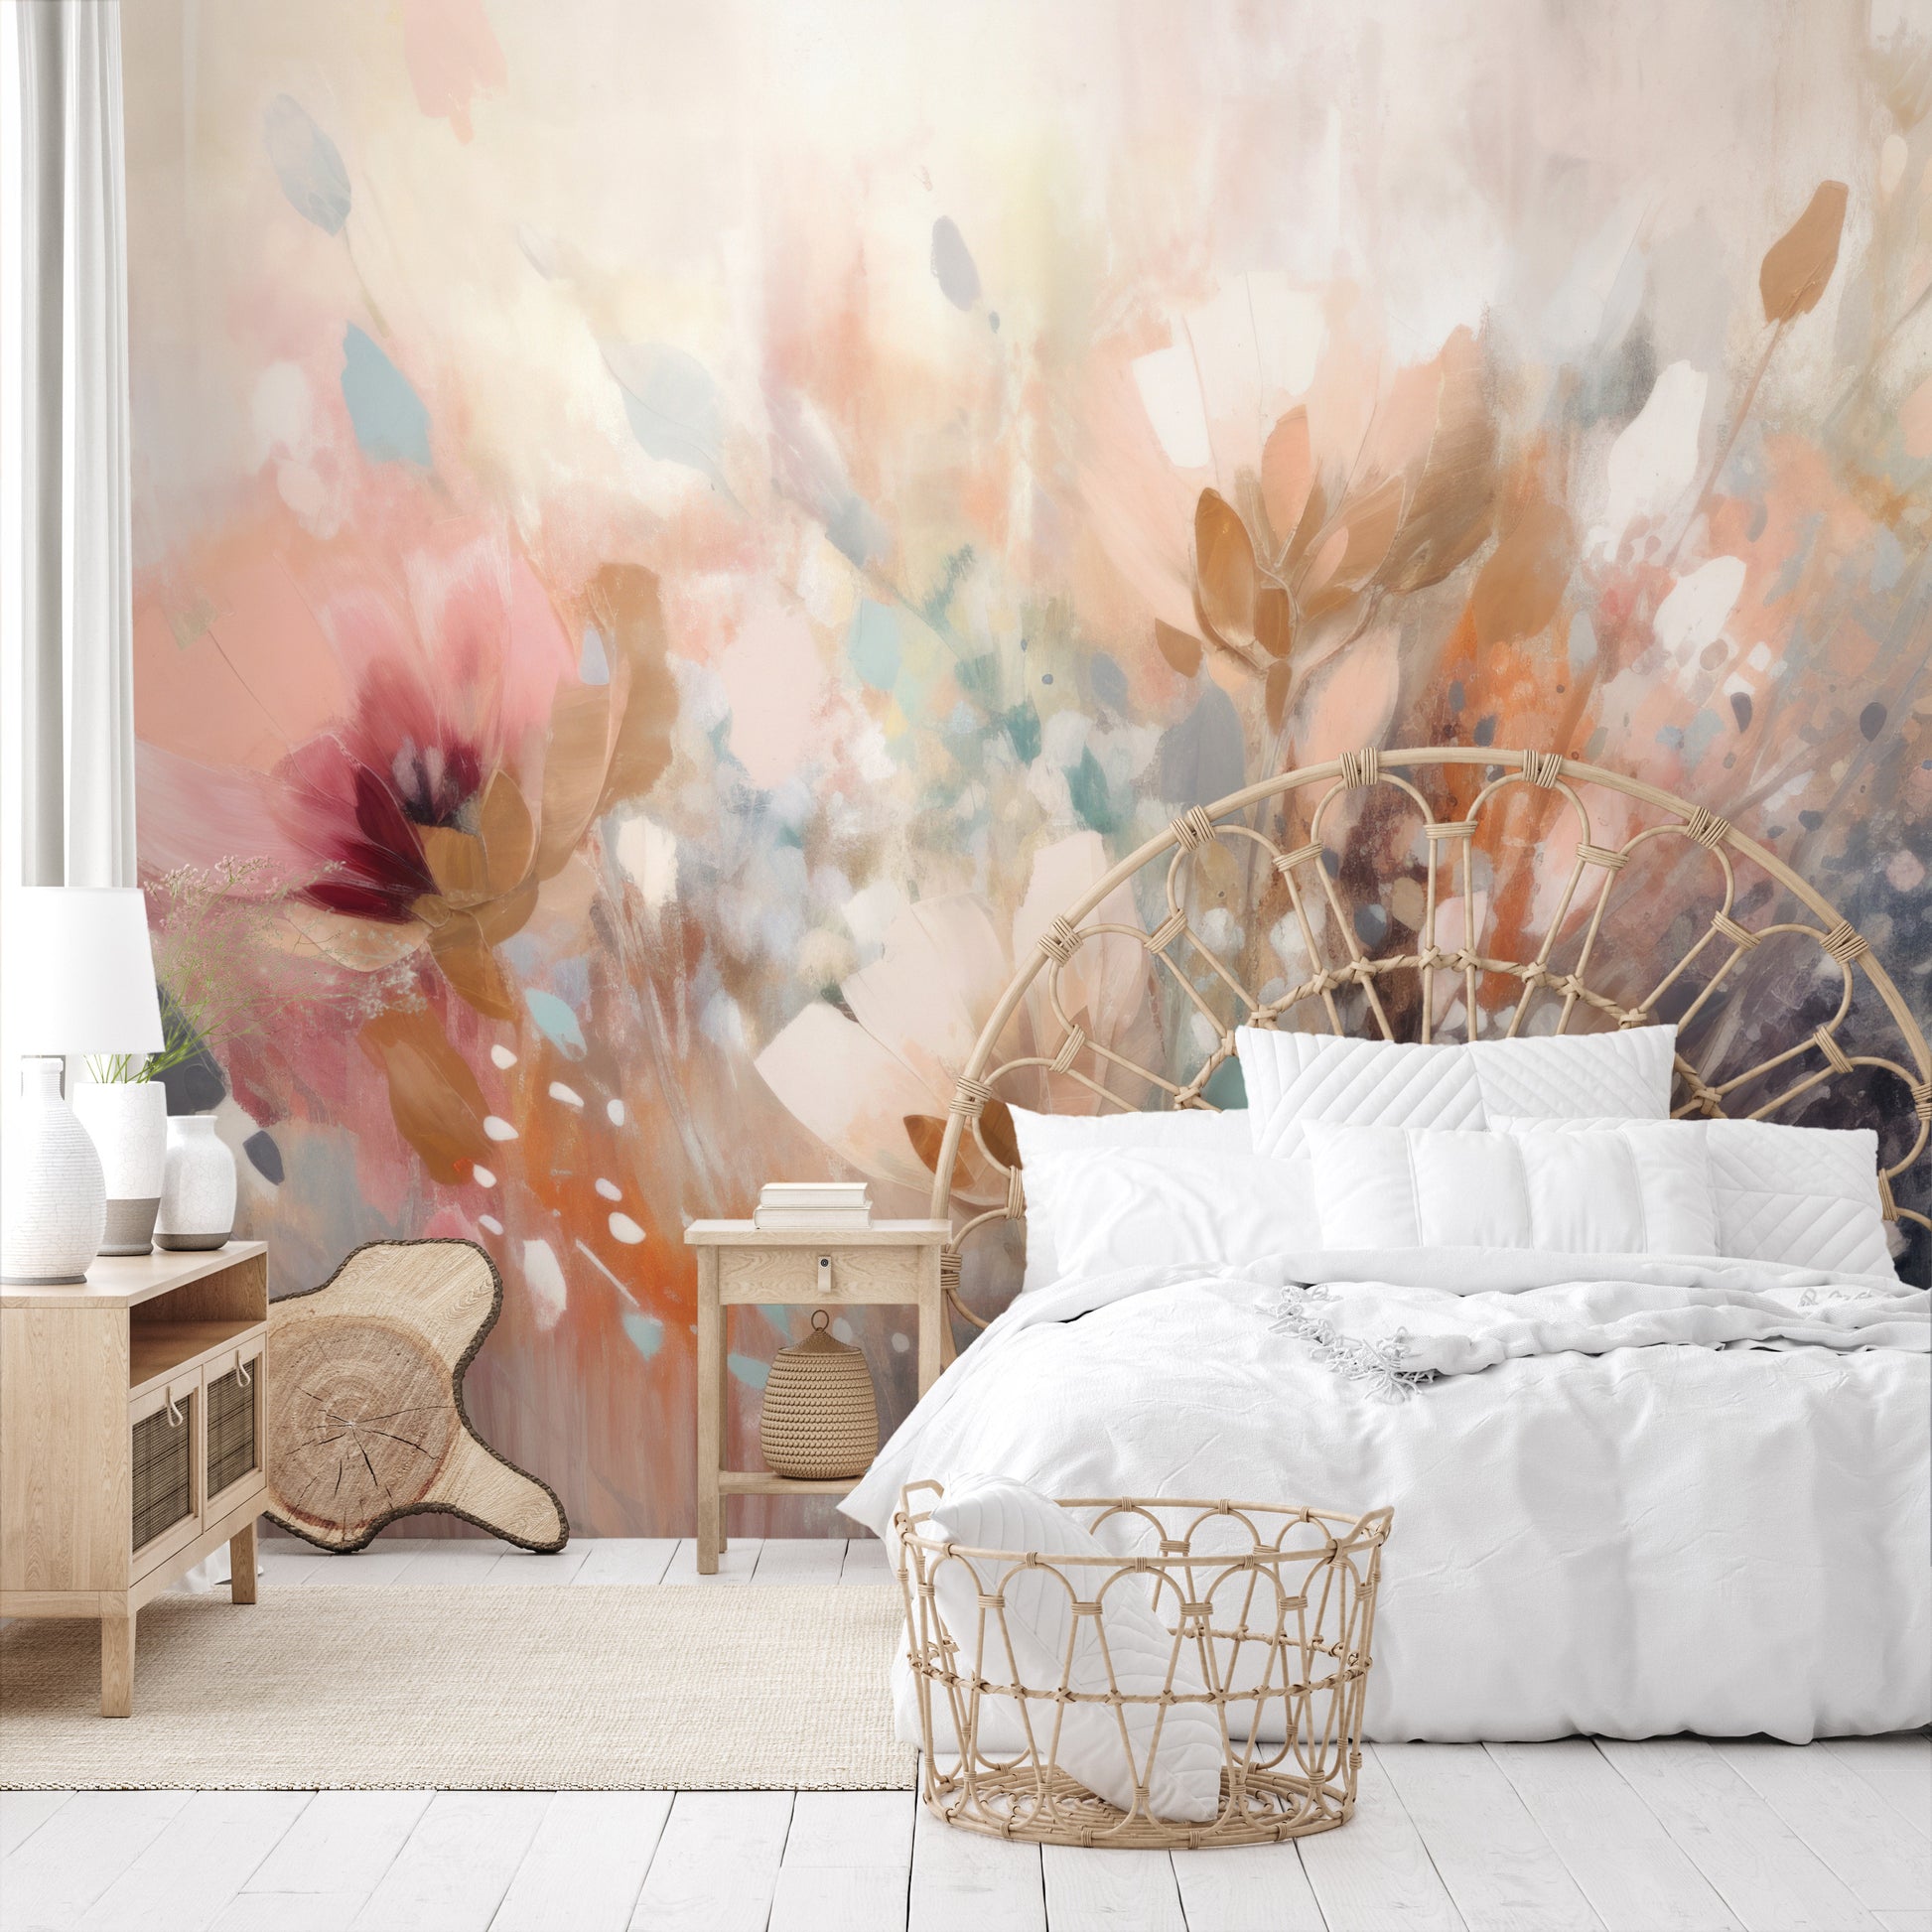 Zdjęcie prezentuje aranżację wnętrza z użyciem fototapety o nazwie Dreamy Floral Impression pokazanej w aranżacji wnętrza.